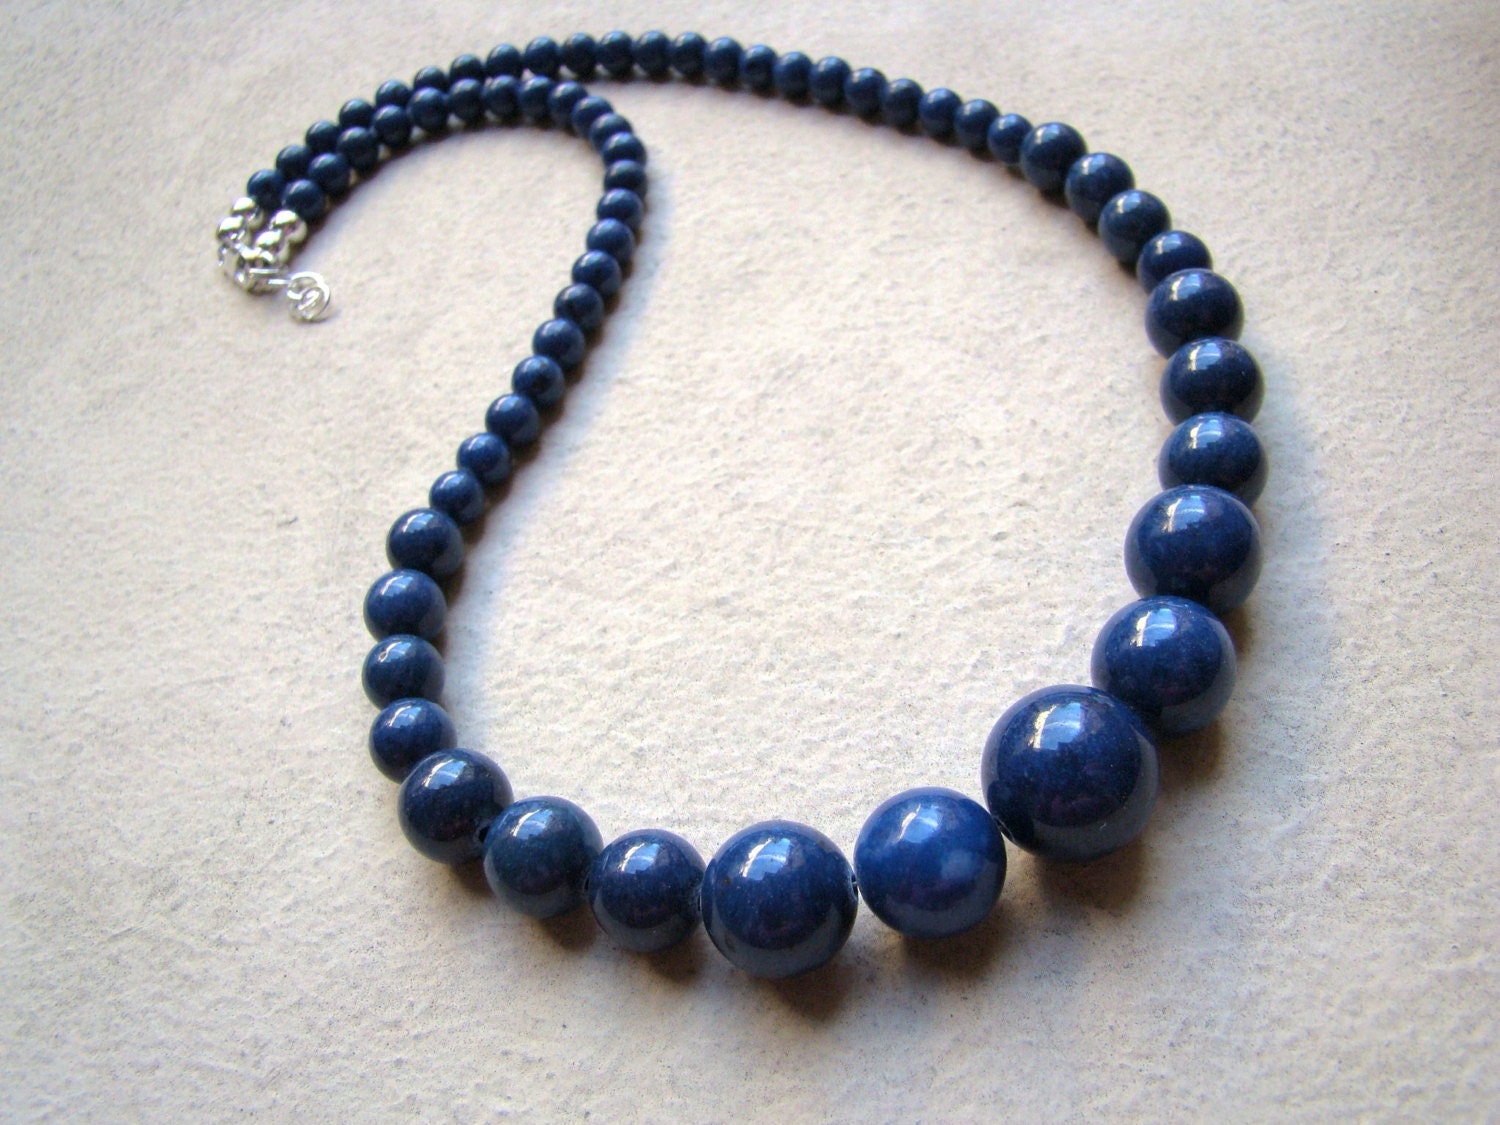 Sale Blue Lapis Lazuli Necklace. Descending necklace. Gift